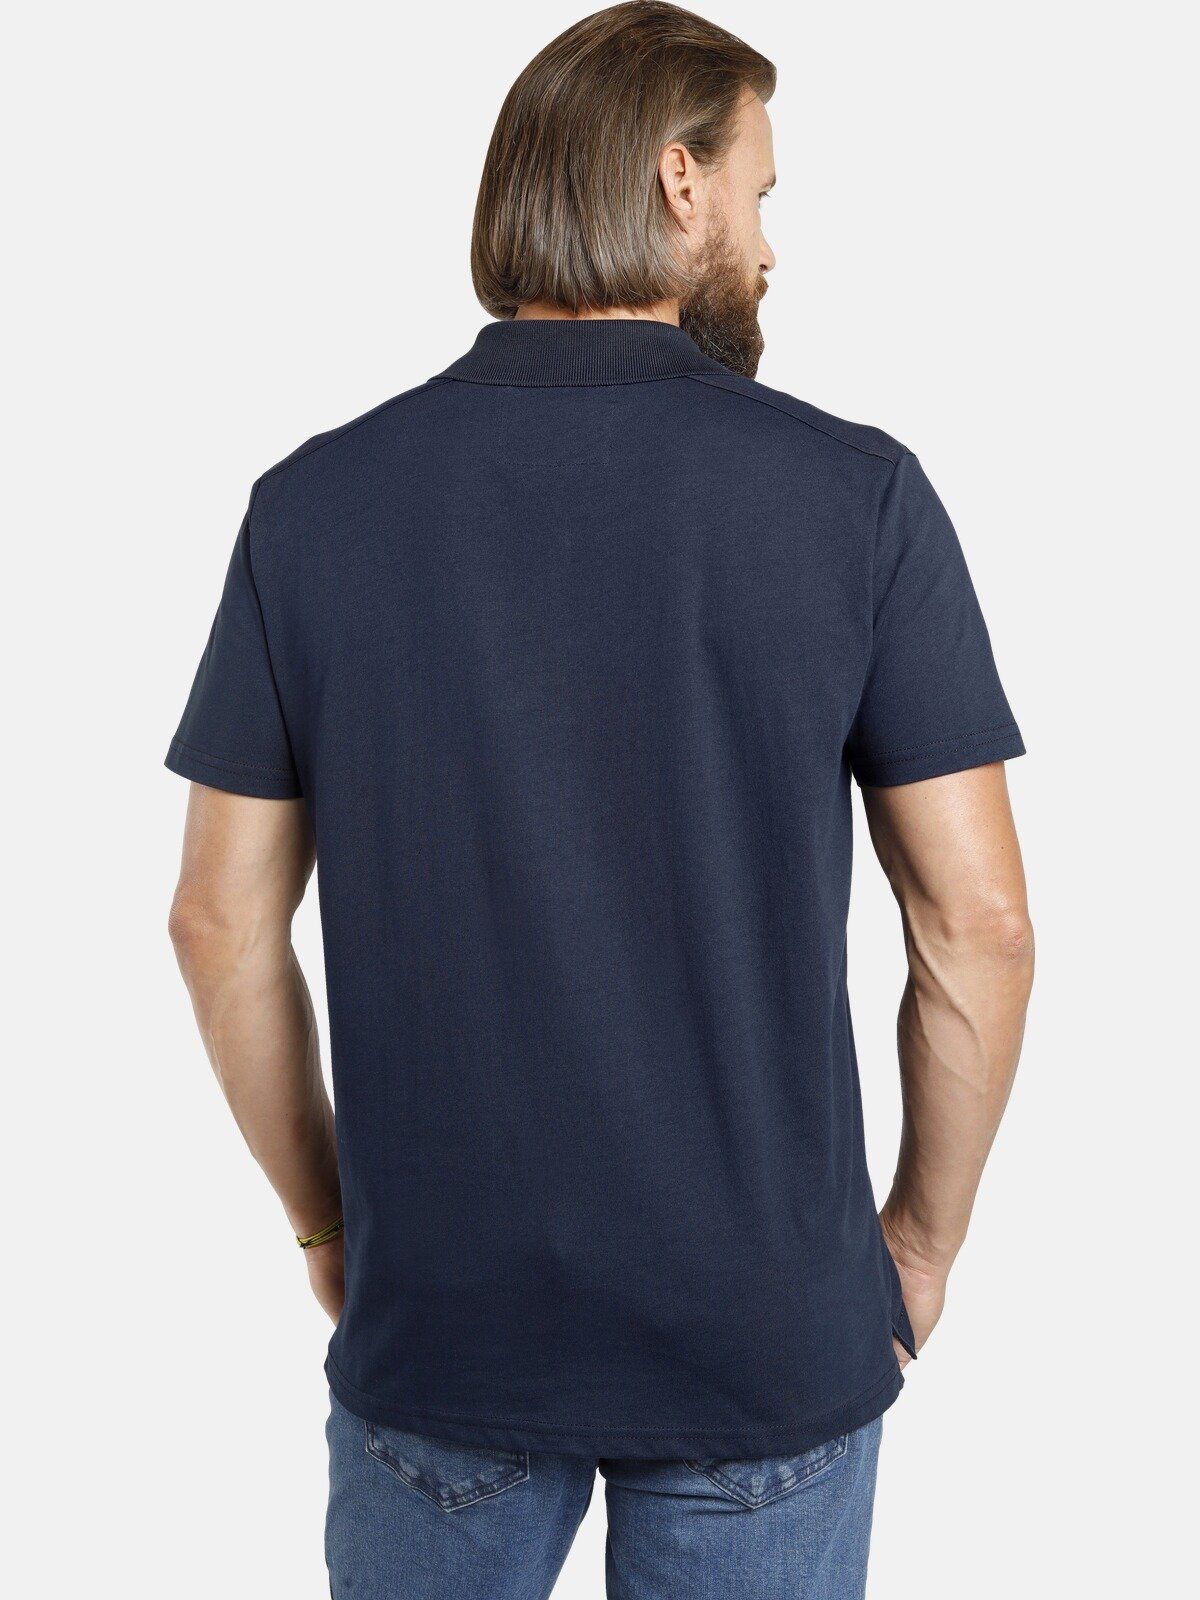 weicher Jersey-Qualität aus dunkelblau JANO Poloshirt Vanderstorm Jan